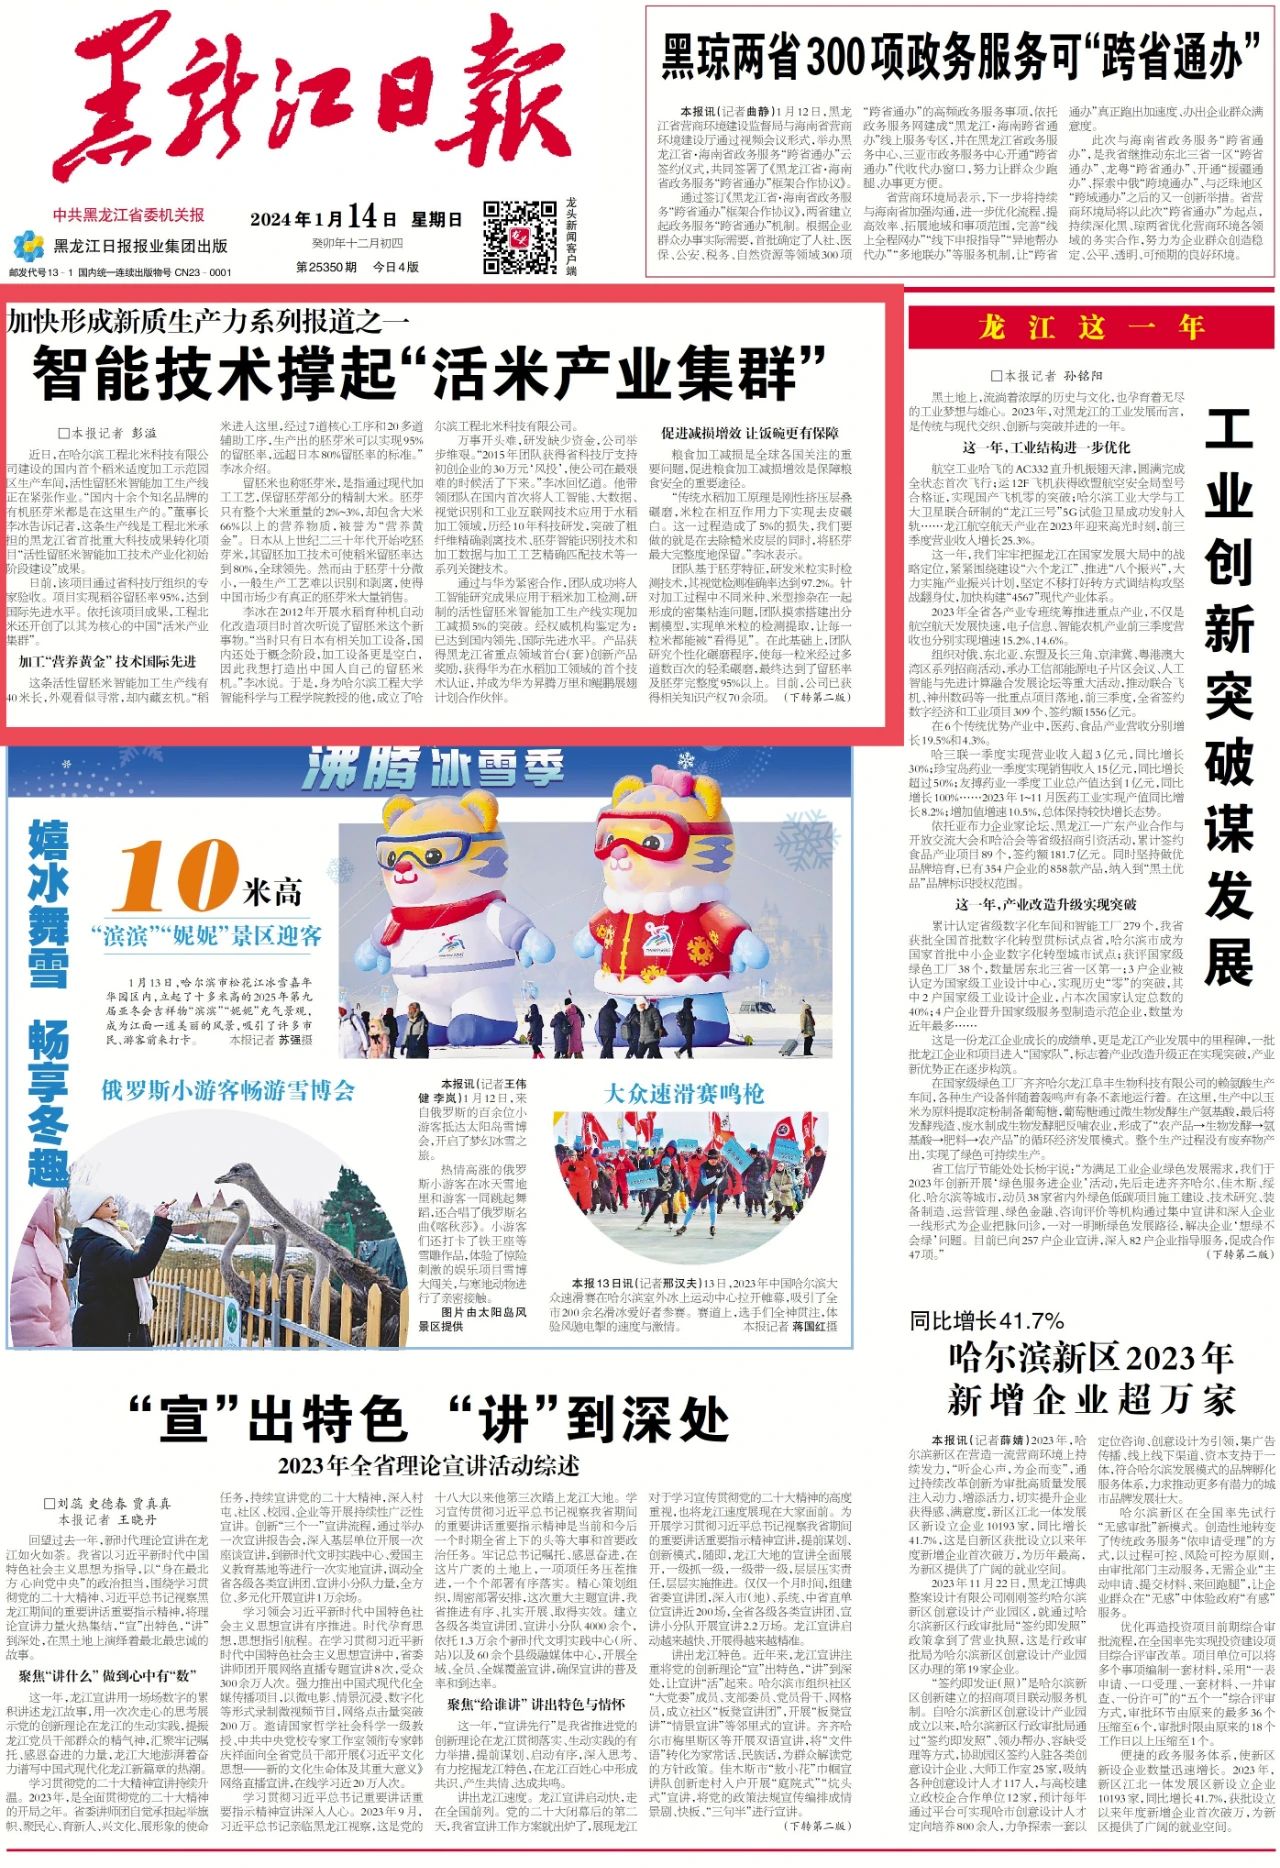 媒体聚焦工程北米|《黑龙江日报》头版头条刊发智能技术撑起“活米产业集群”